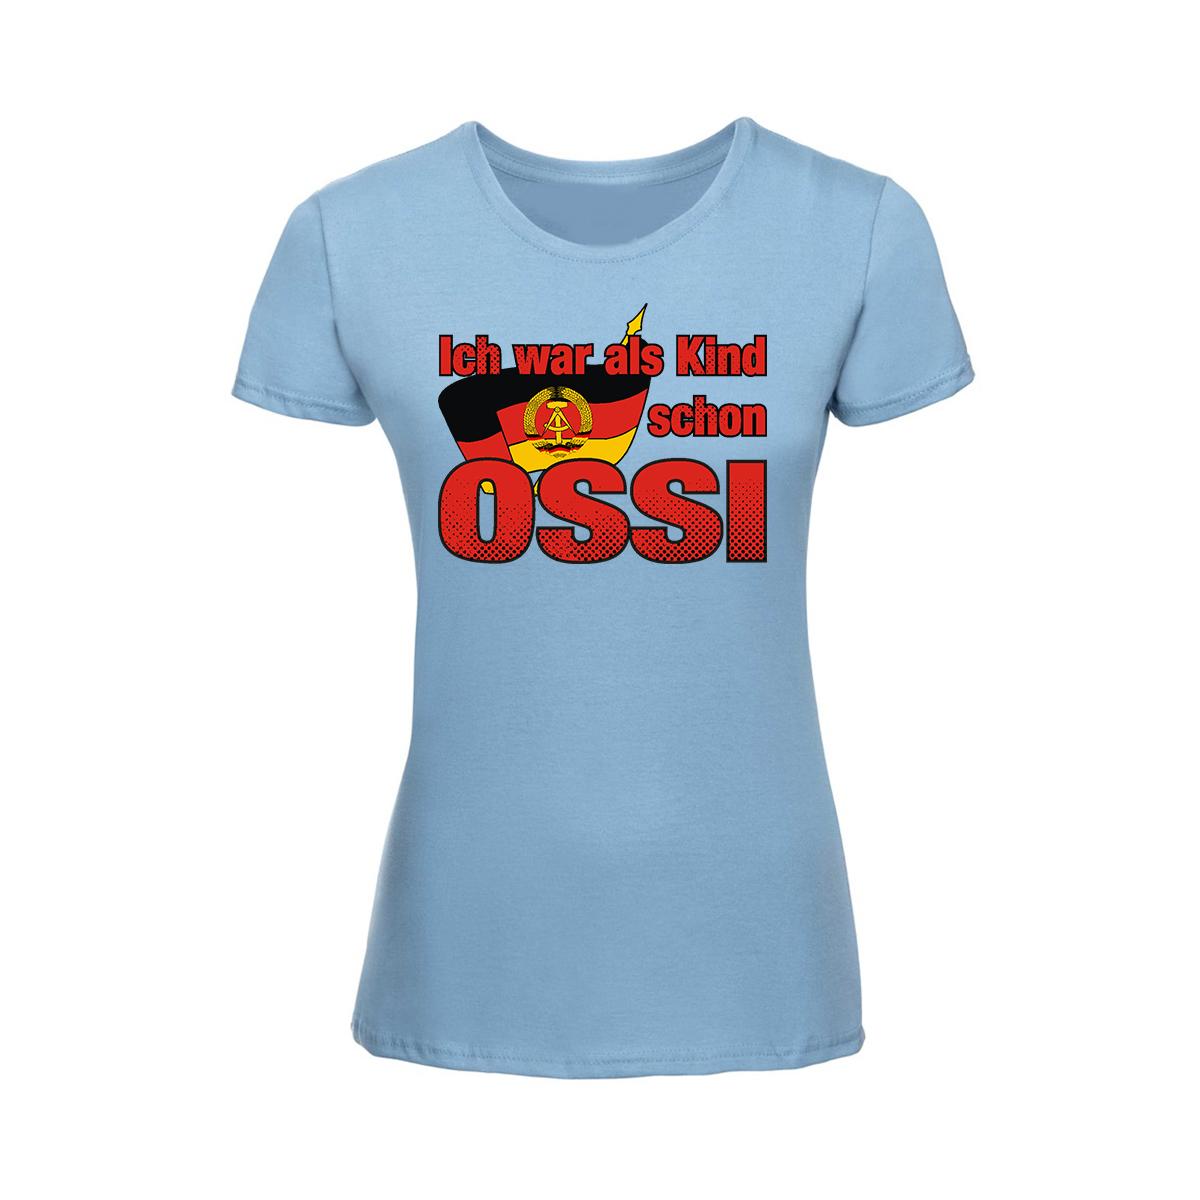 Ich war als Kind schon Ossi - Frauen Shirt - hellblau